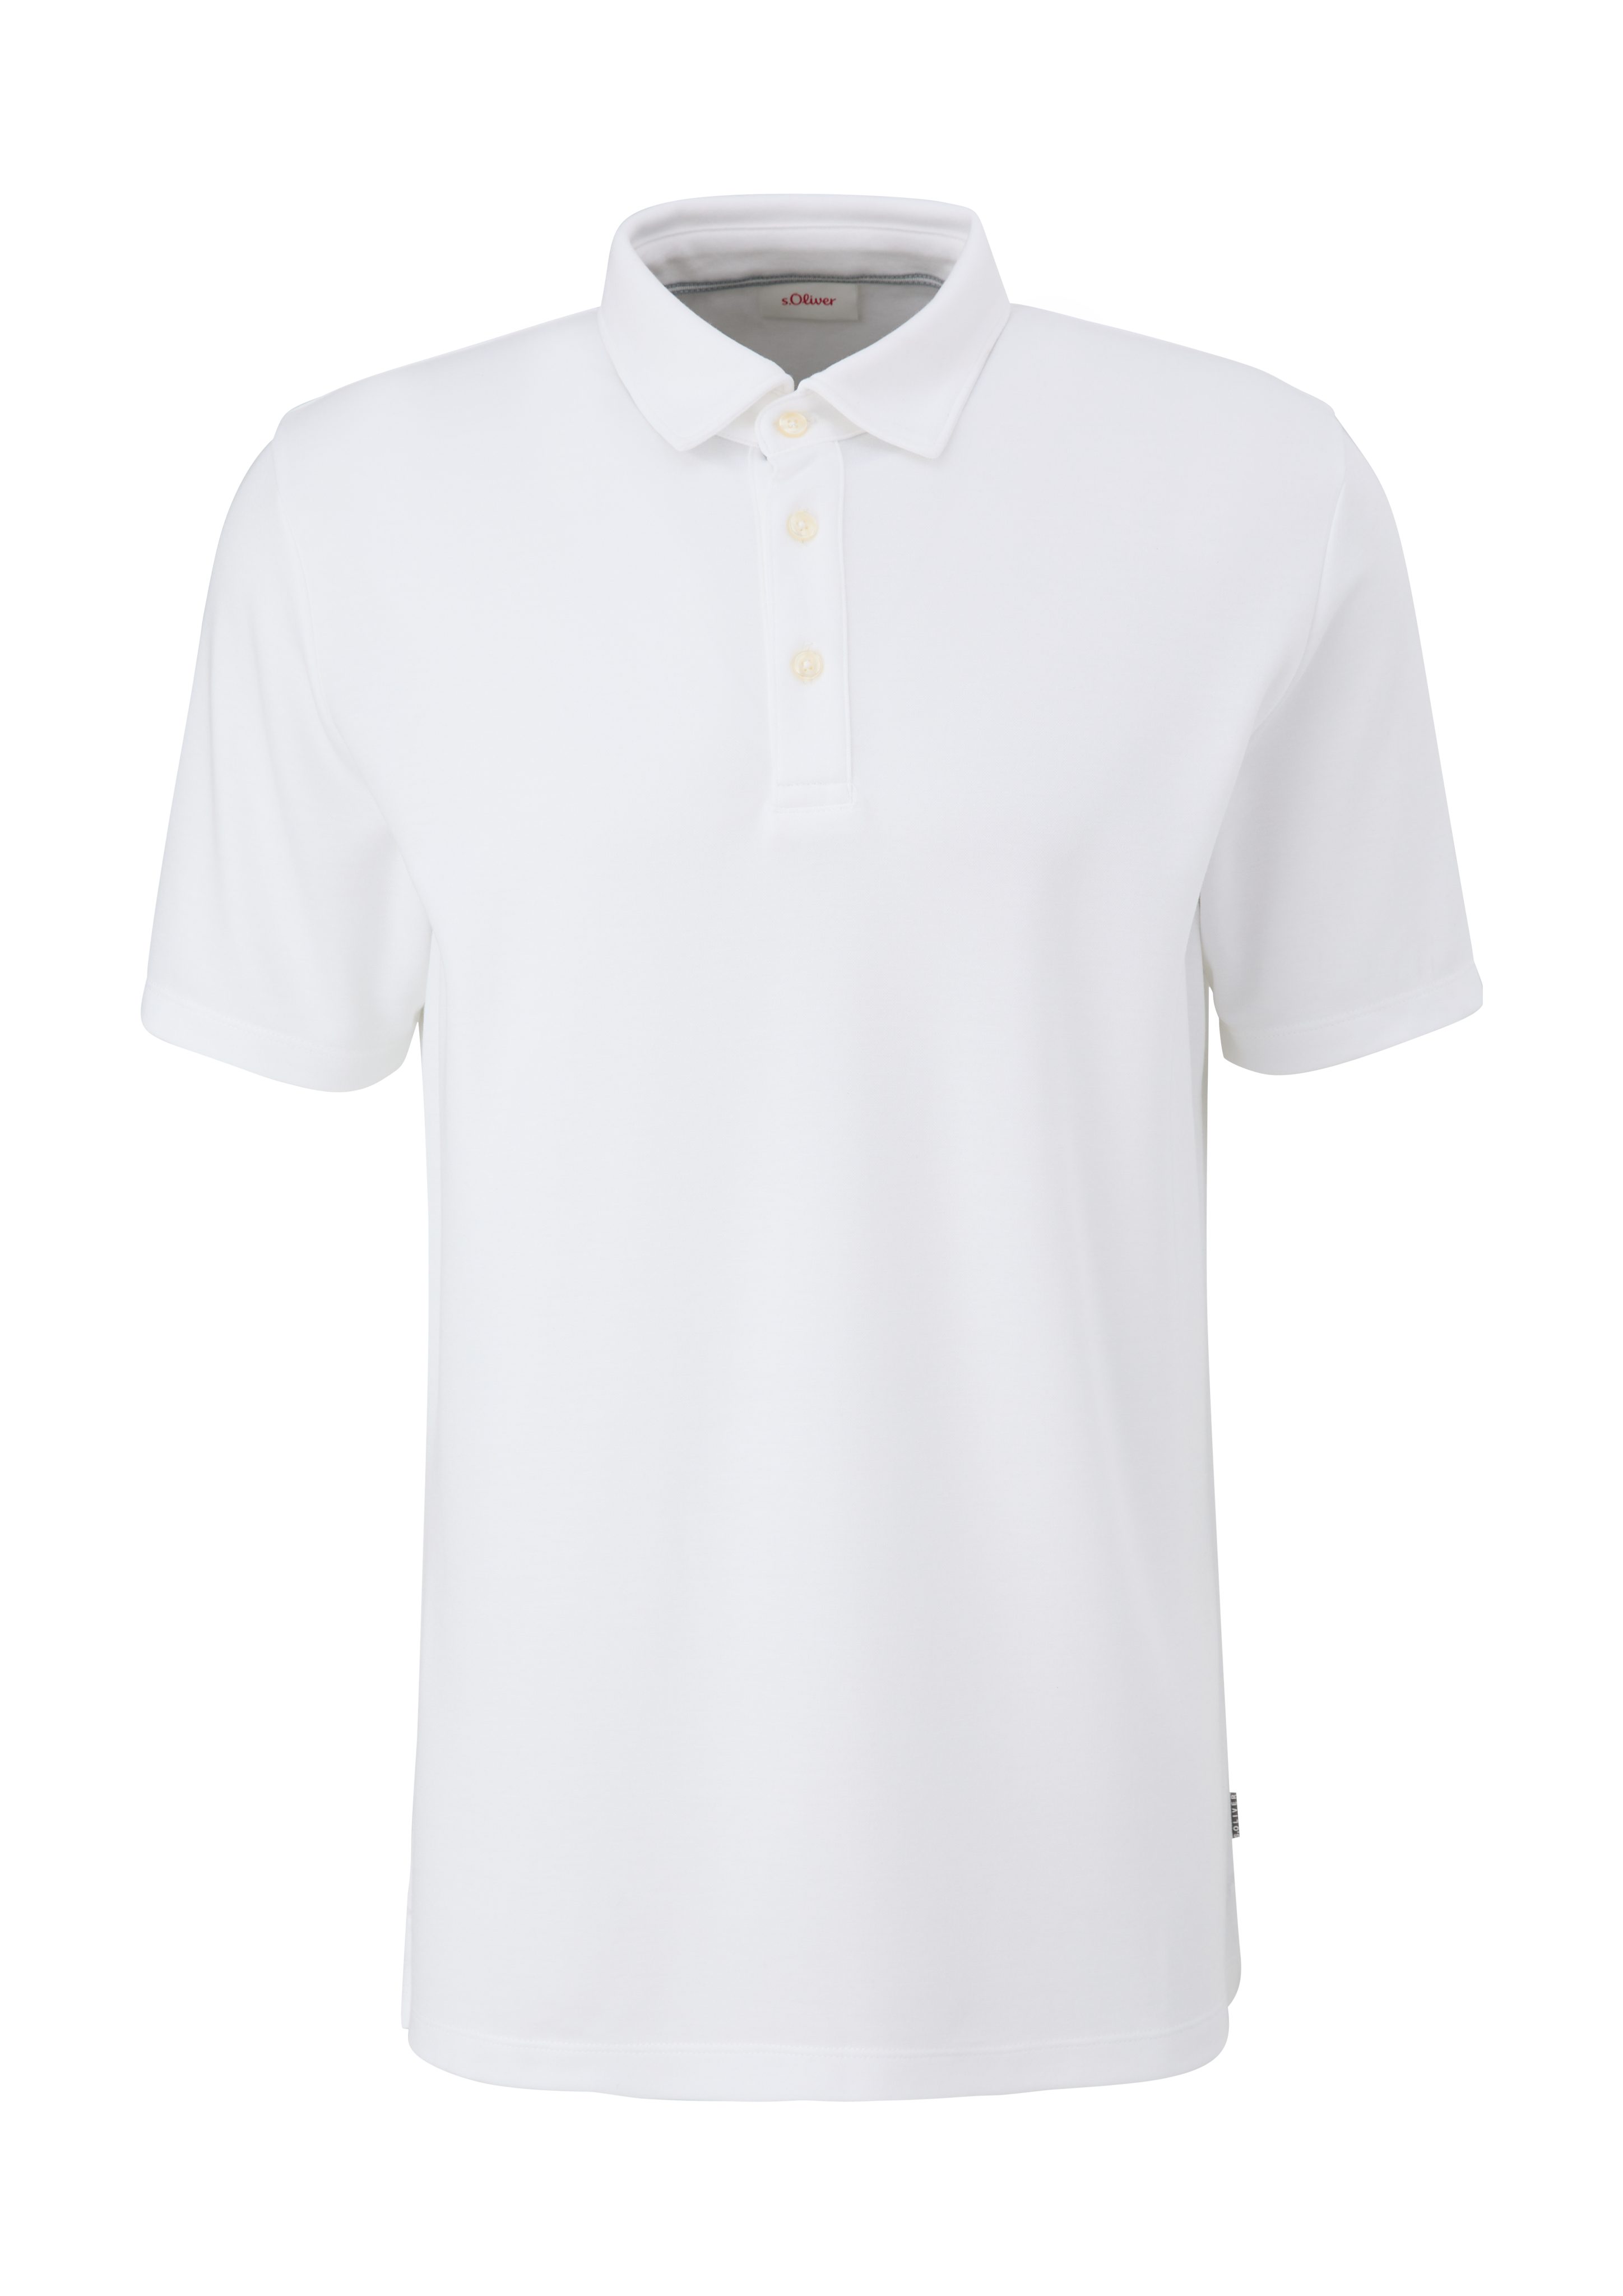 s.Oliver Kurzarmshirt Poloshirt weiß aus Modalmix